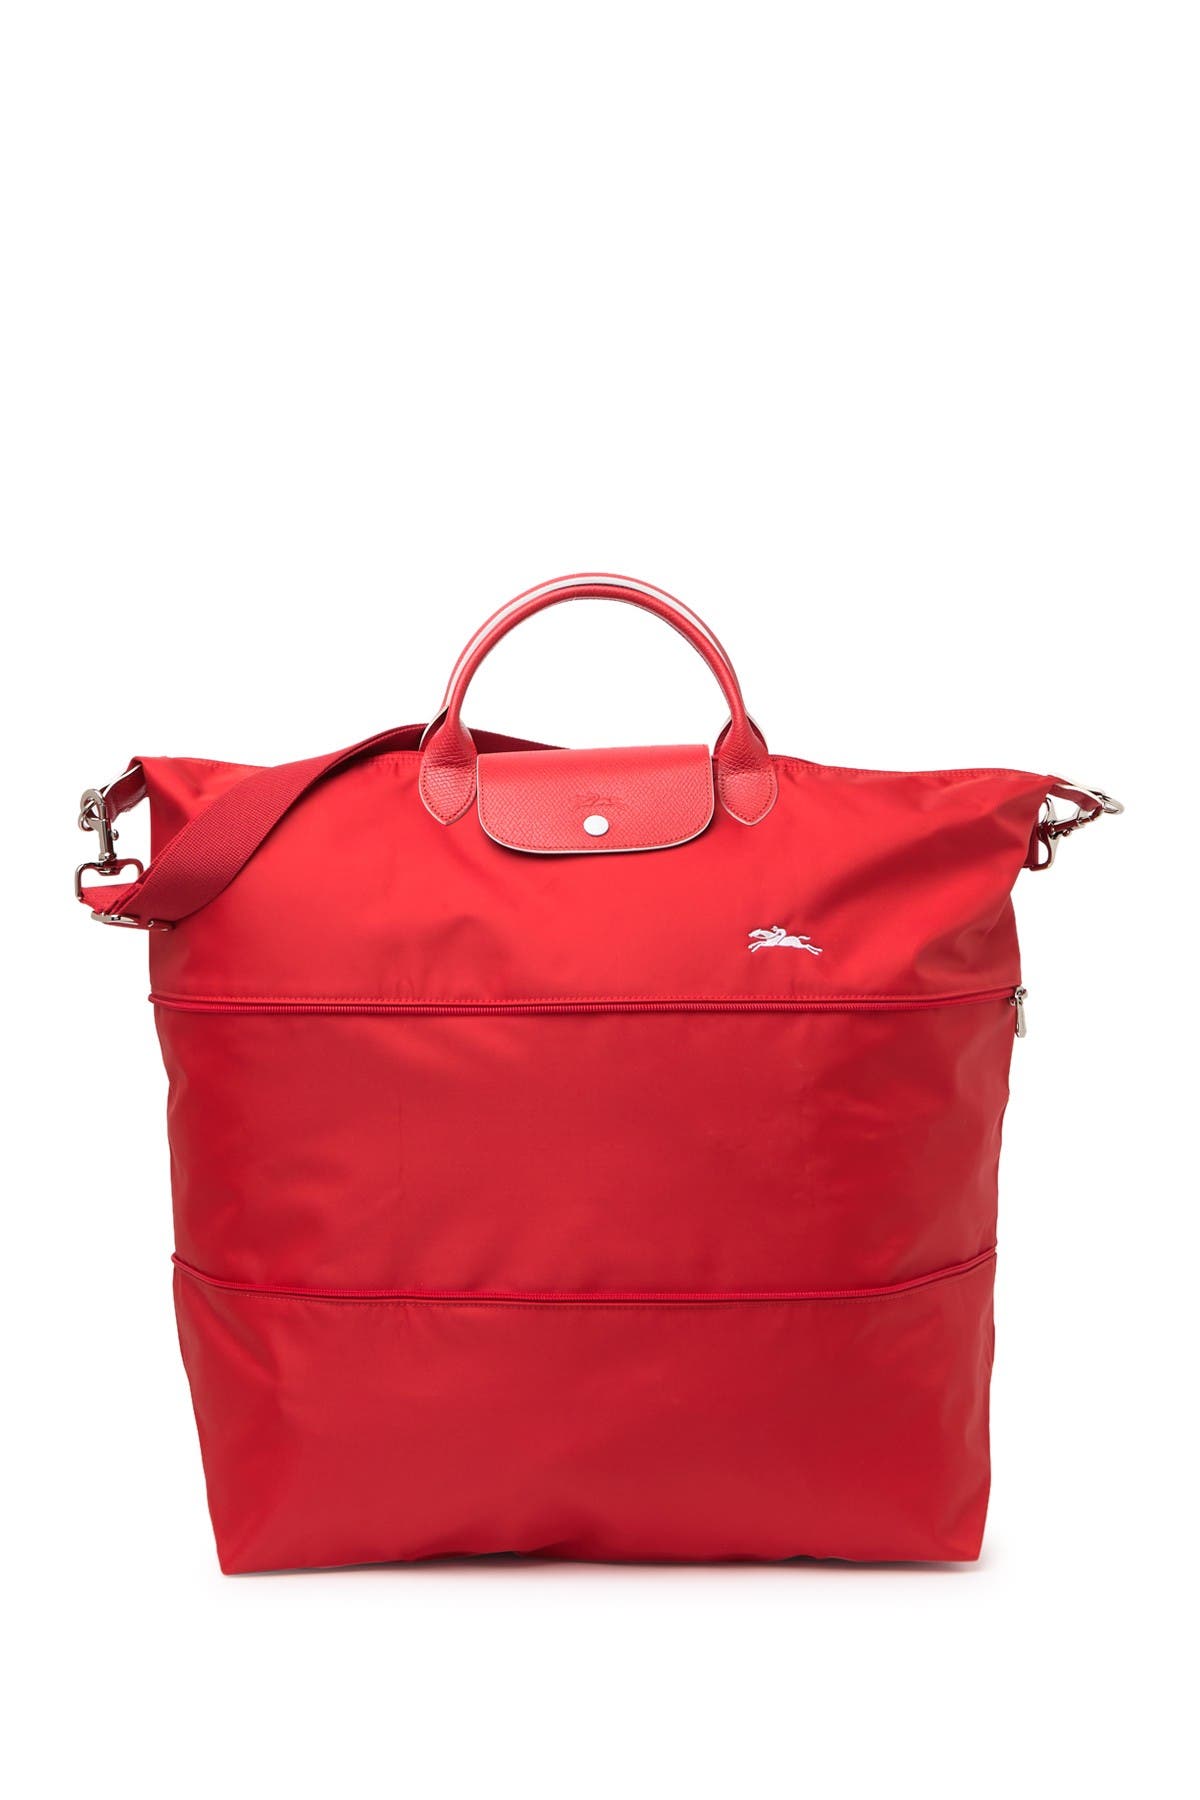 longchamp expandable travel bag review